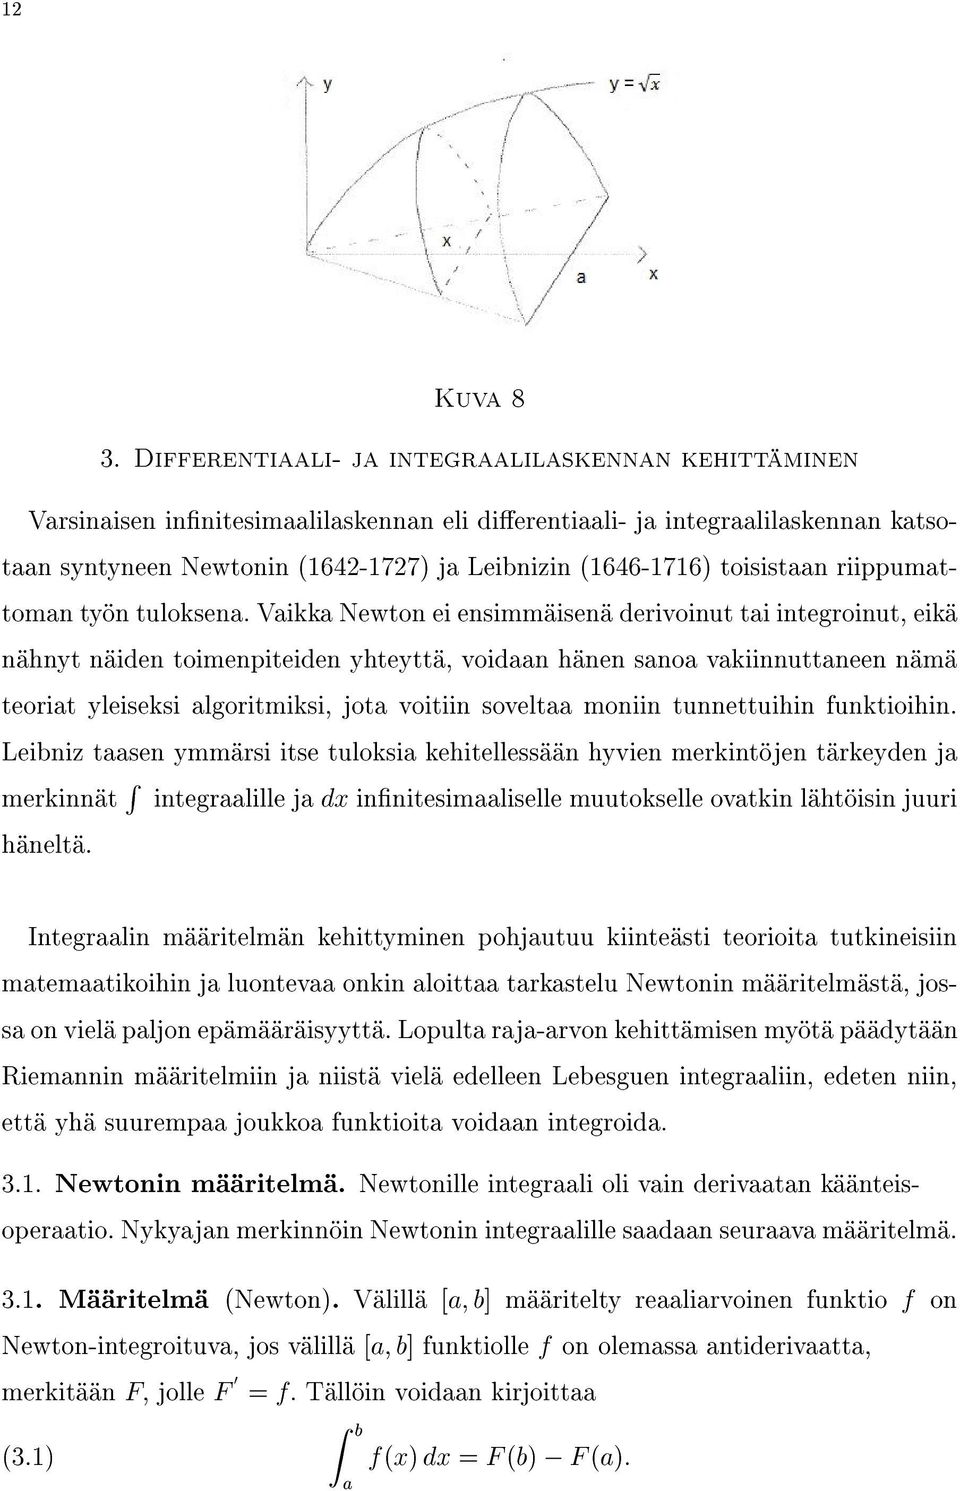 Varsinaiseninnitesimaalilaskennanelidierentiaali-jaintegraalilaskennankatsotaansyntyneenNewtonin(1642-1727)jaLeibnizin(1646-1716)toisistaanriippumattomantyöntuloksena.